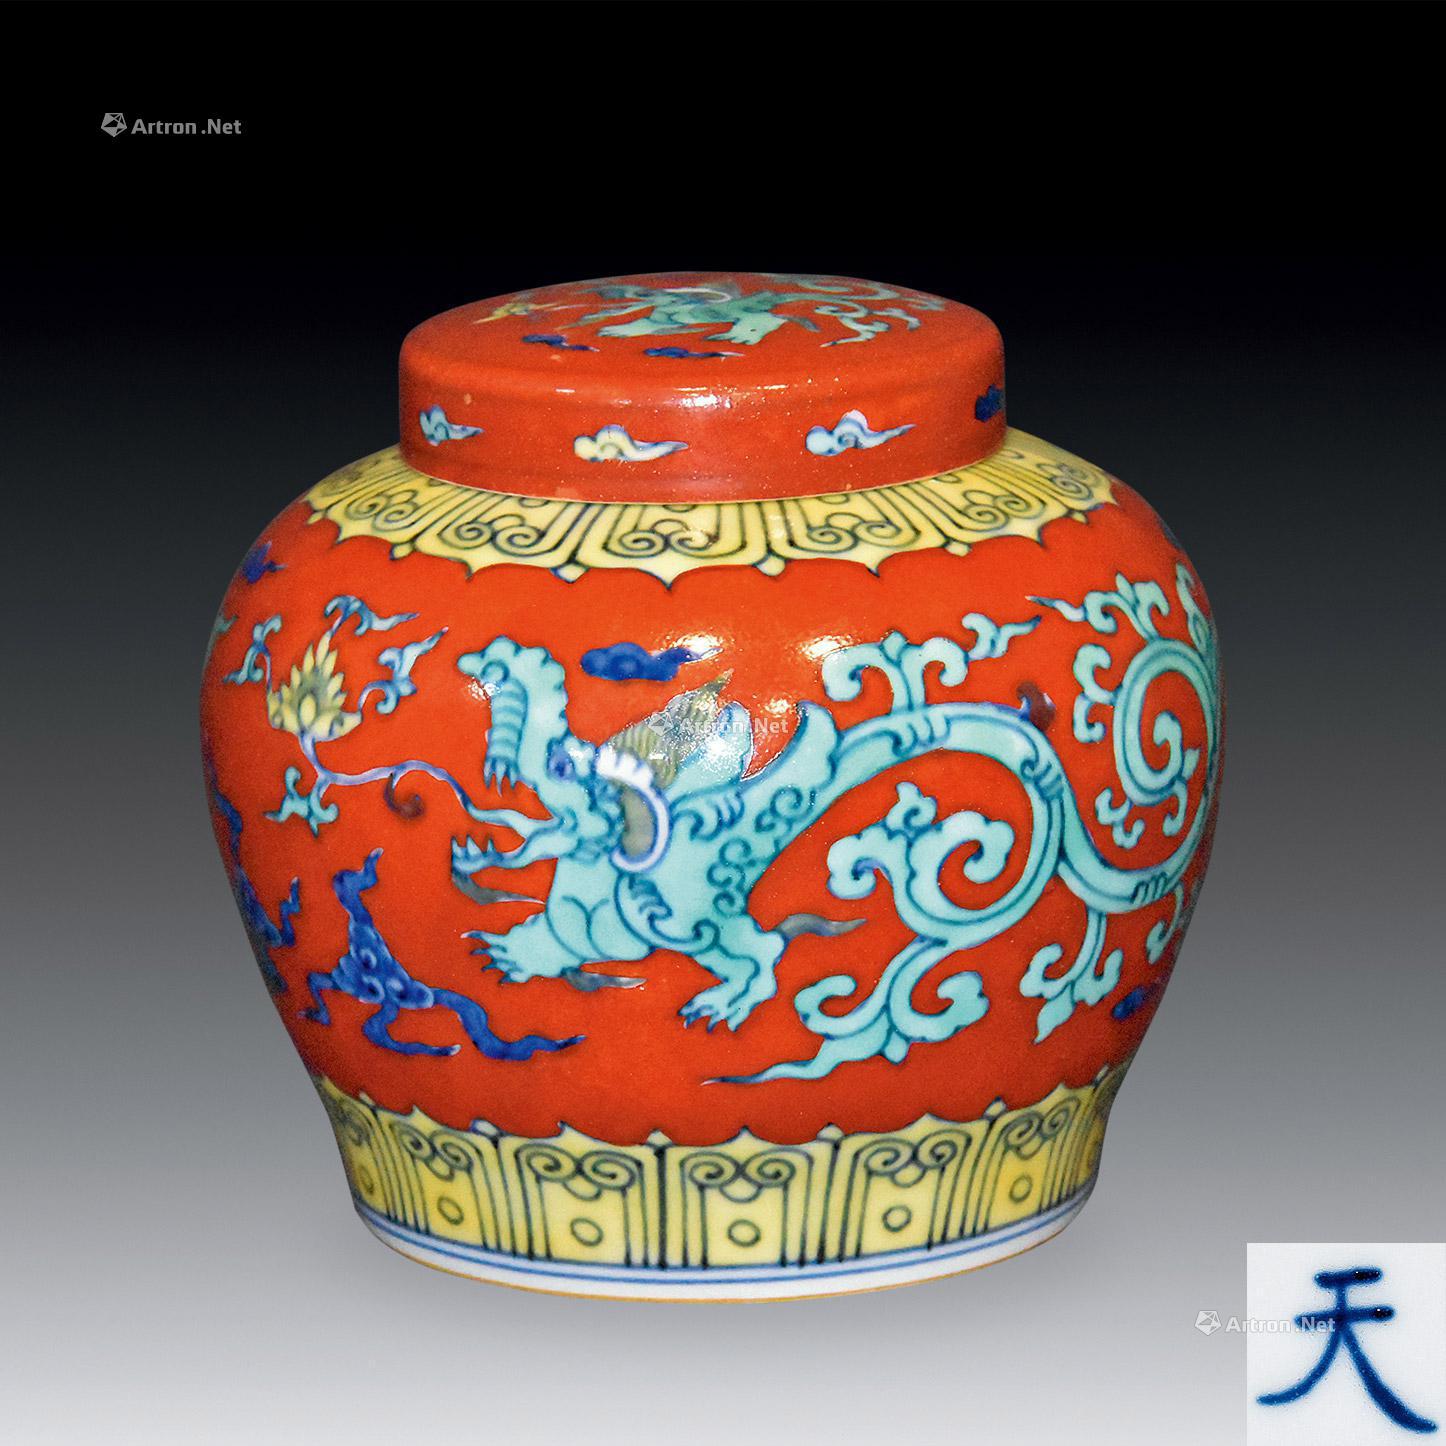 明・成化年製款・古陶瓷品・紅綠彩・龍紋・天字罐一對『収蔵家蔵』稀少 